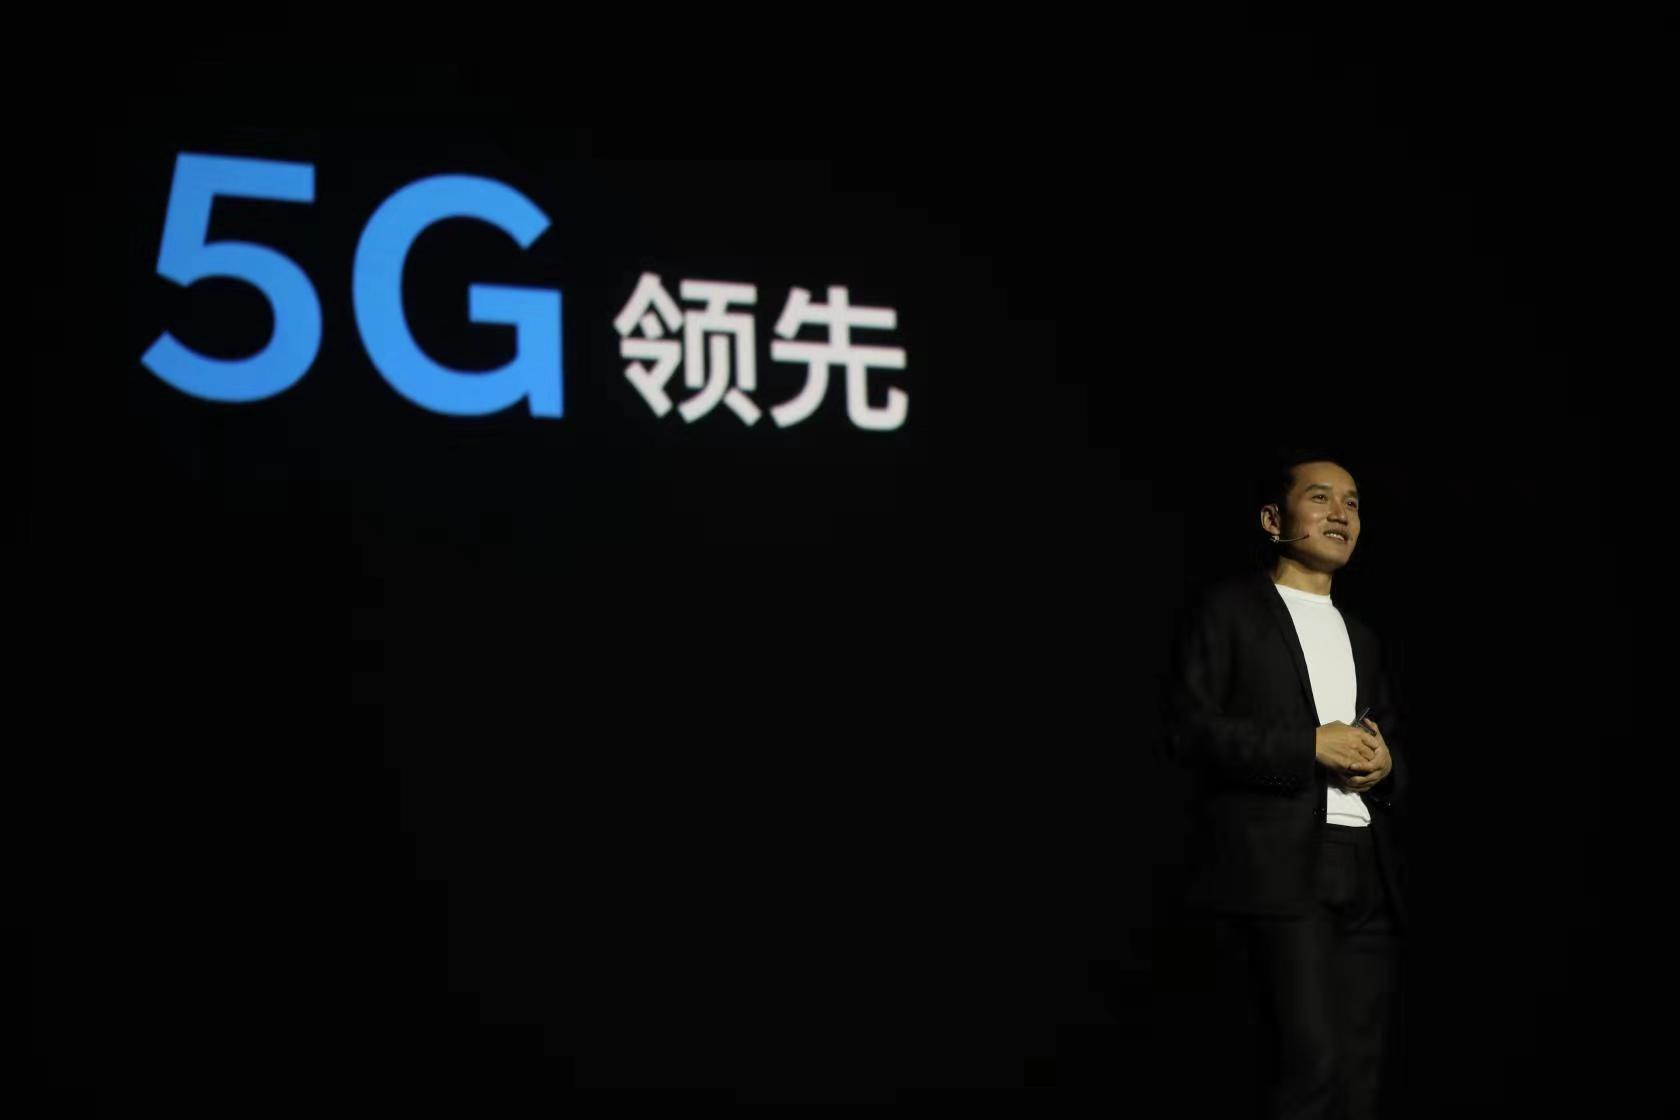 一加手機6T國內售價3399元起 劉作虎稱將是首批5G廠商 科技 第1張